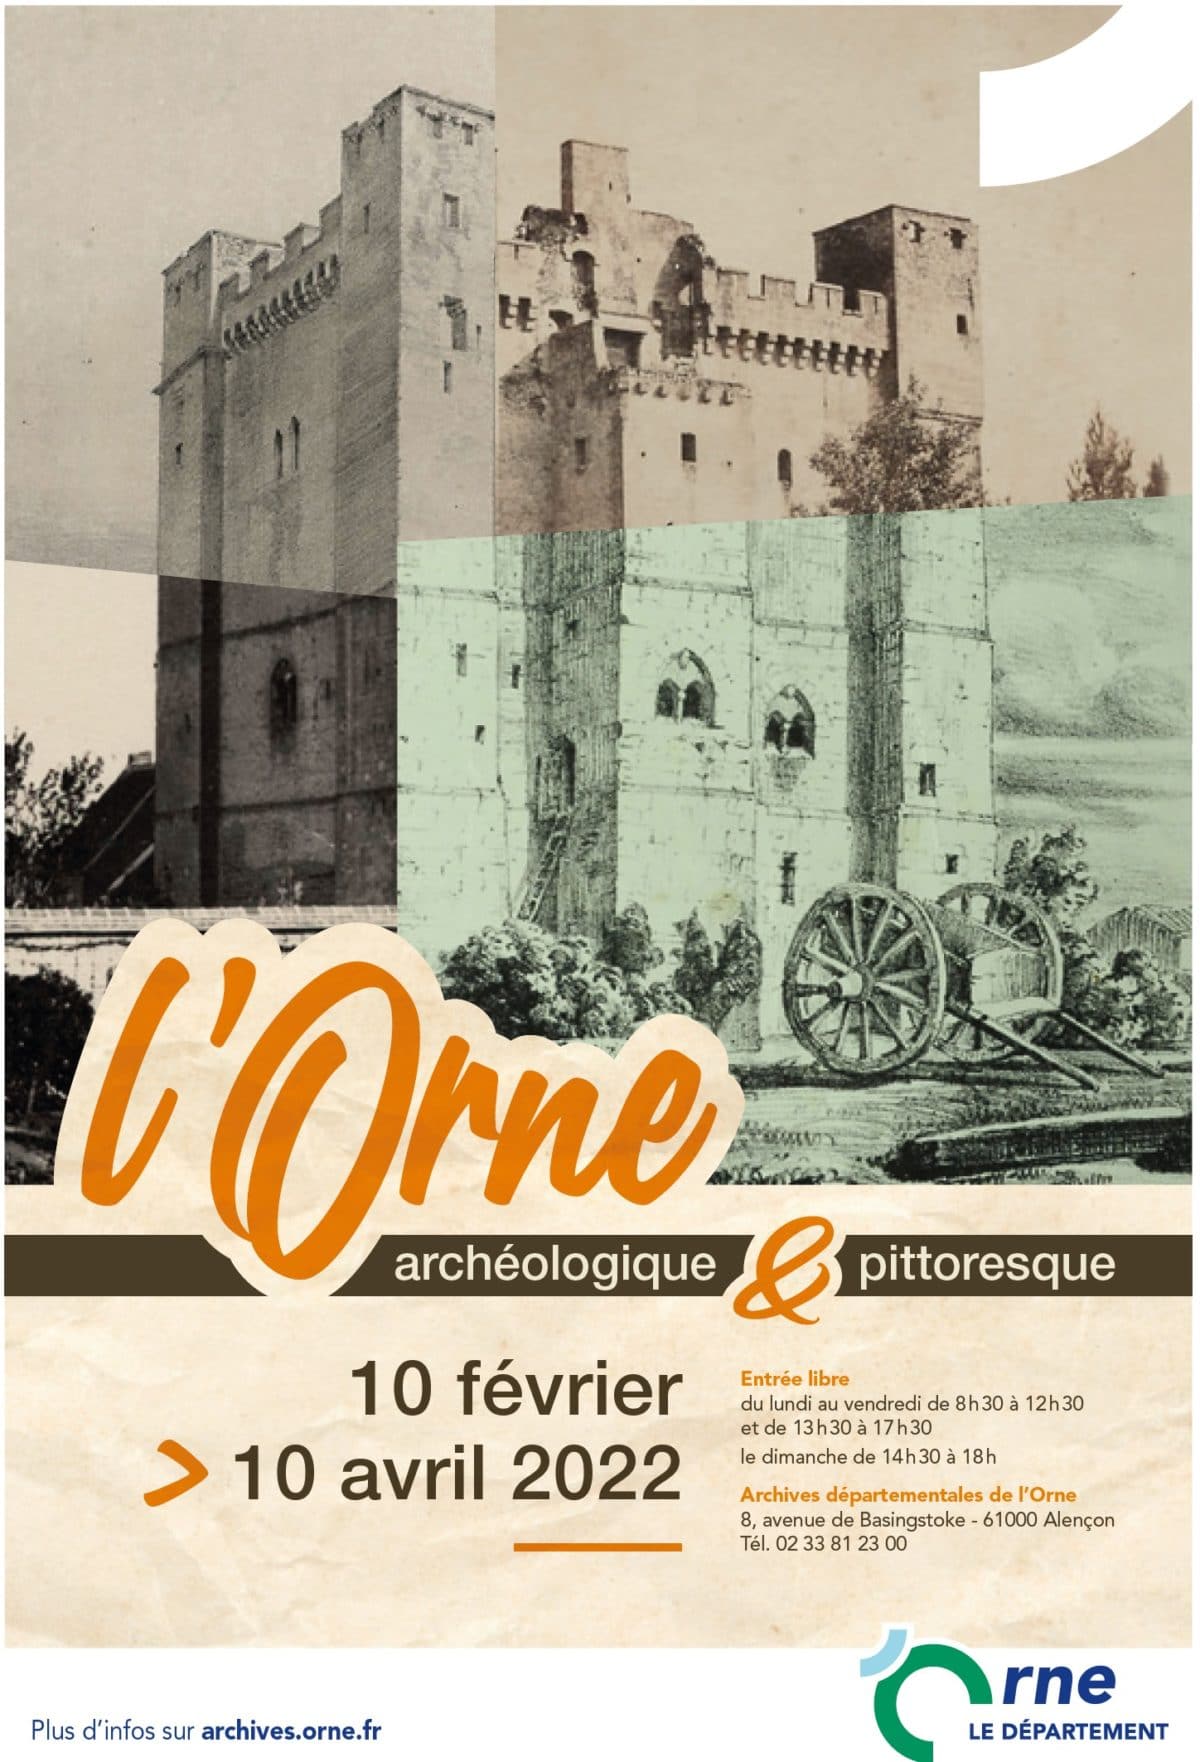 2022-03, exposition archives départementales de l'Orne, L'Orne archéologique et pittoresque, affiche